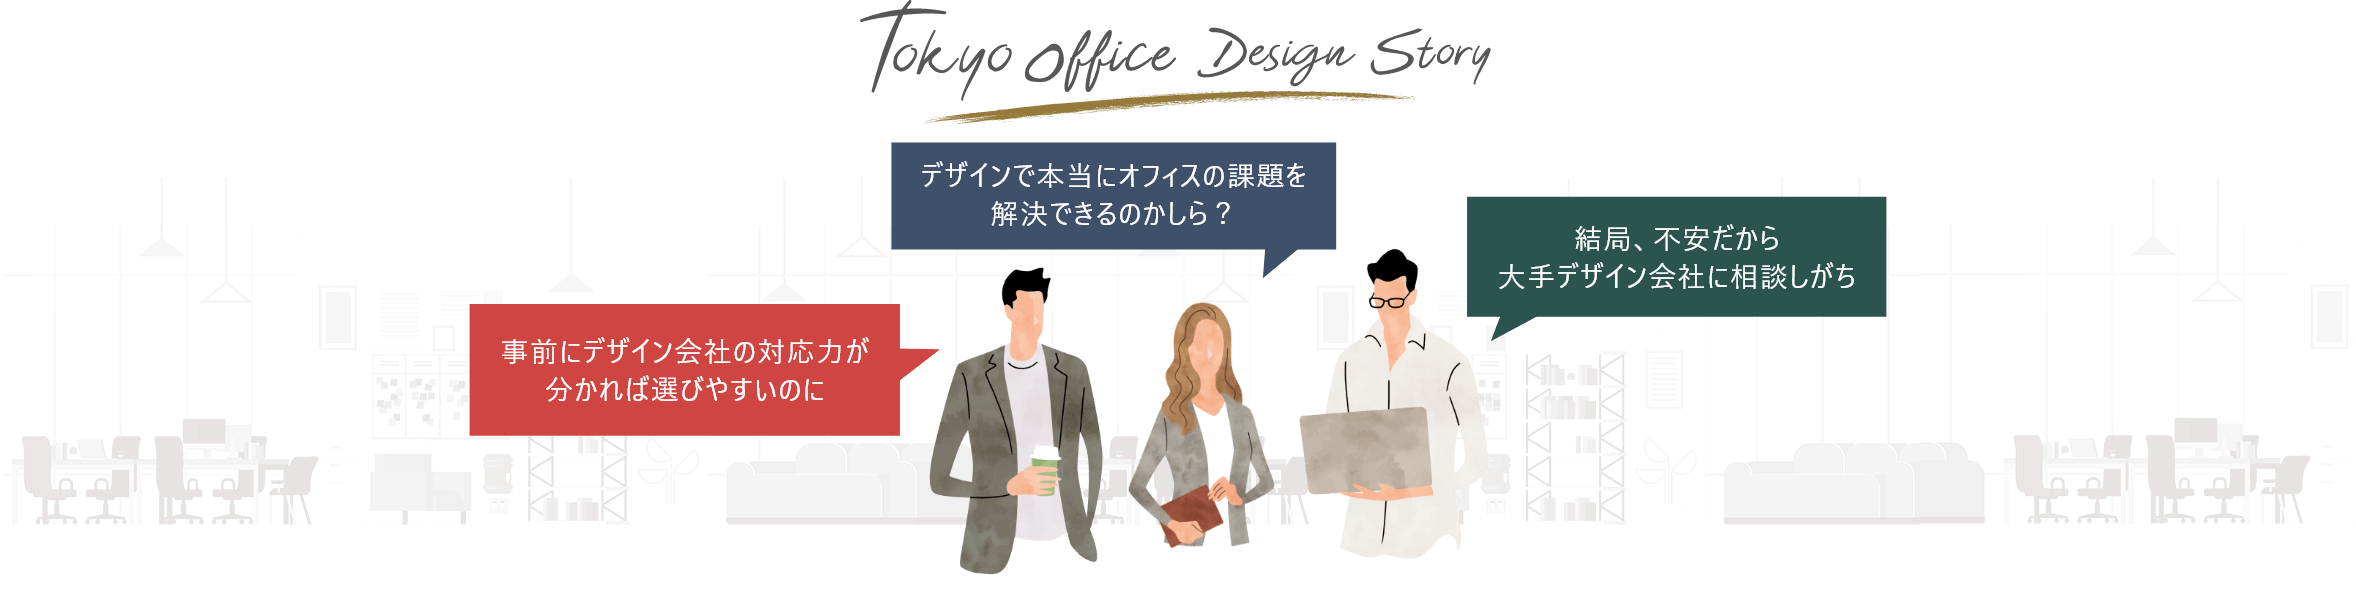 対応力の高さが分かる“東京オフィスデザインストーリー”